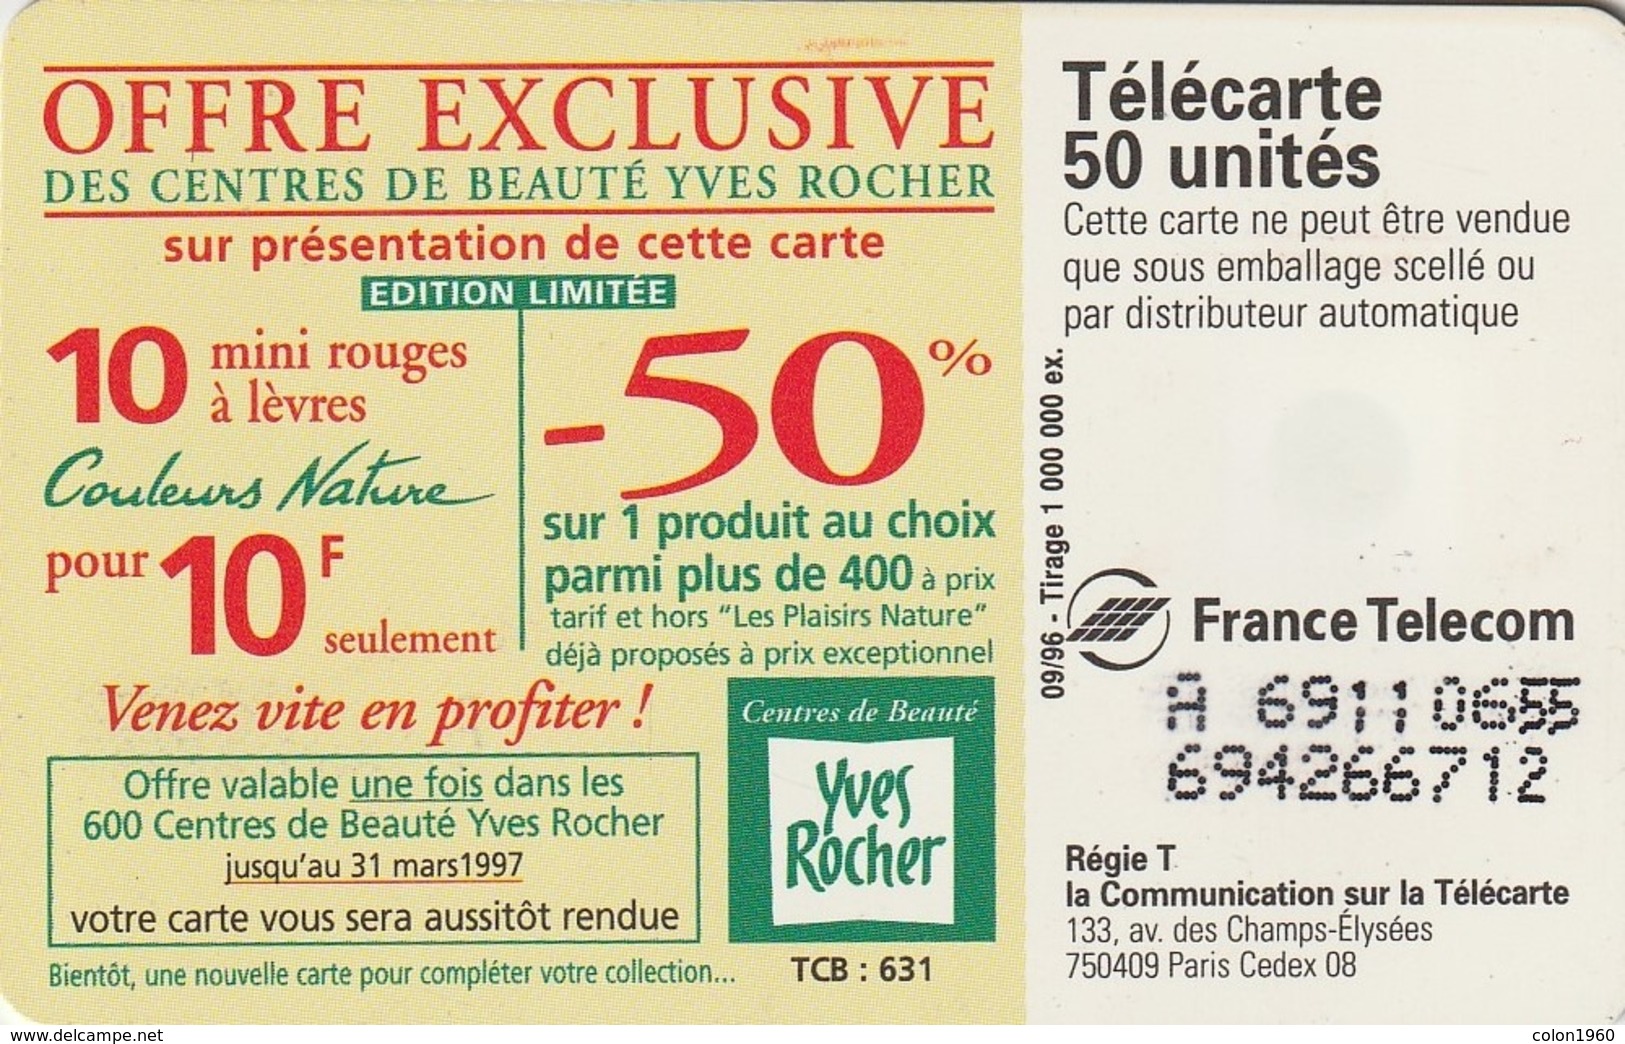 FRANCIA. Yves Rocher 3 Irresistible. 0693. 09/96. (240). - 1996